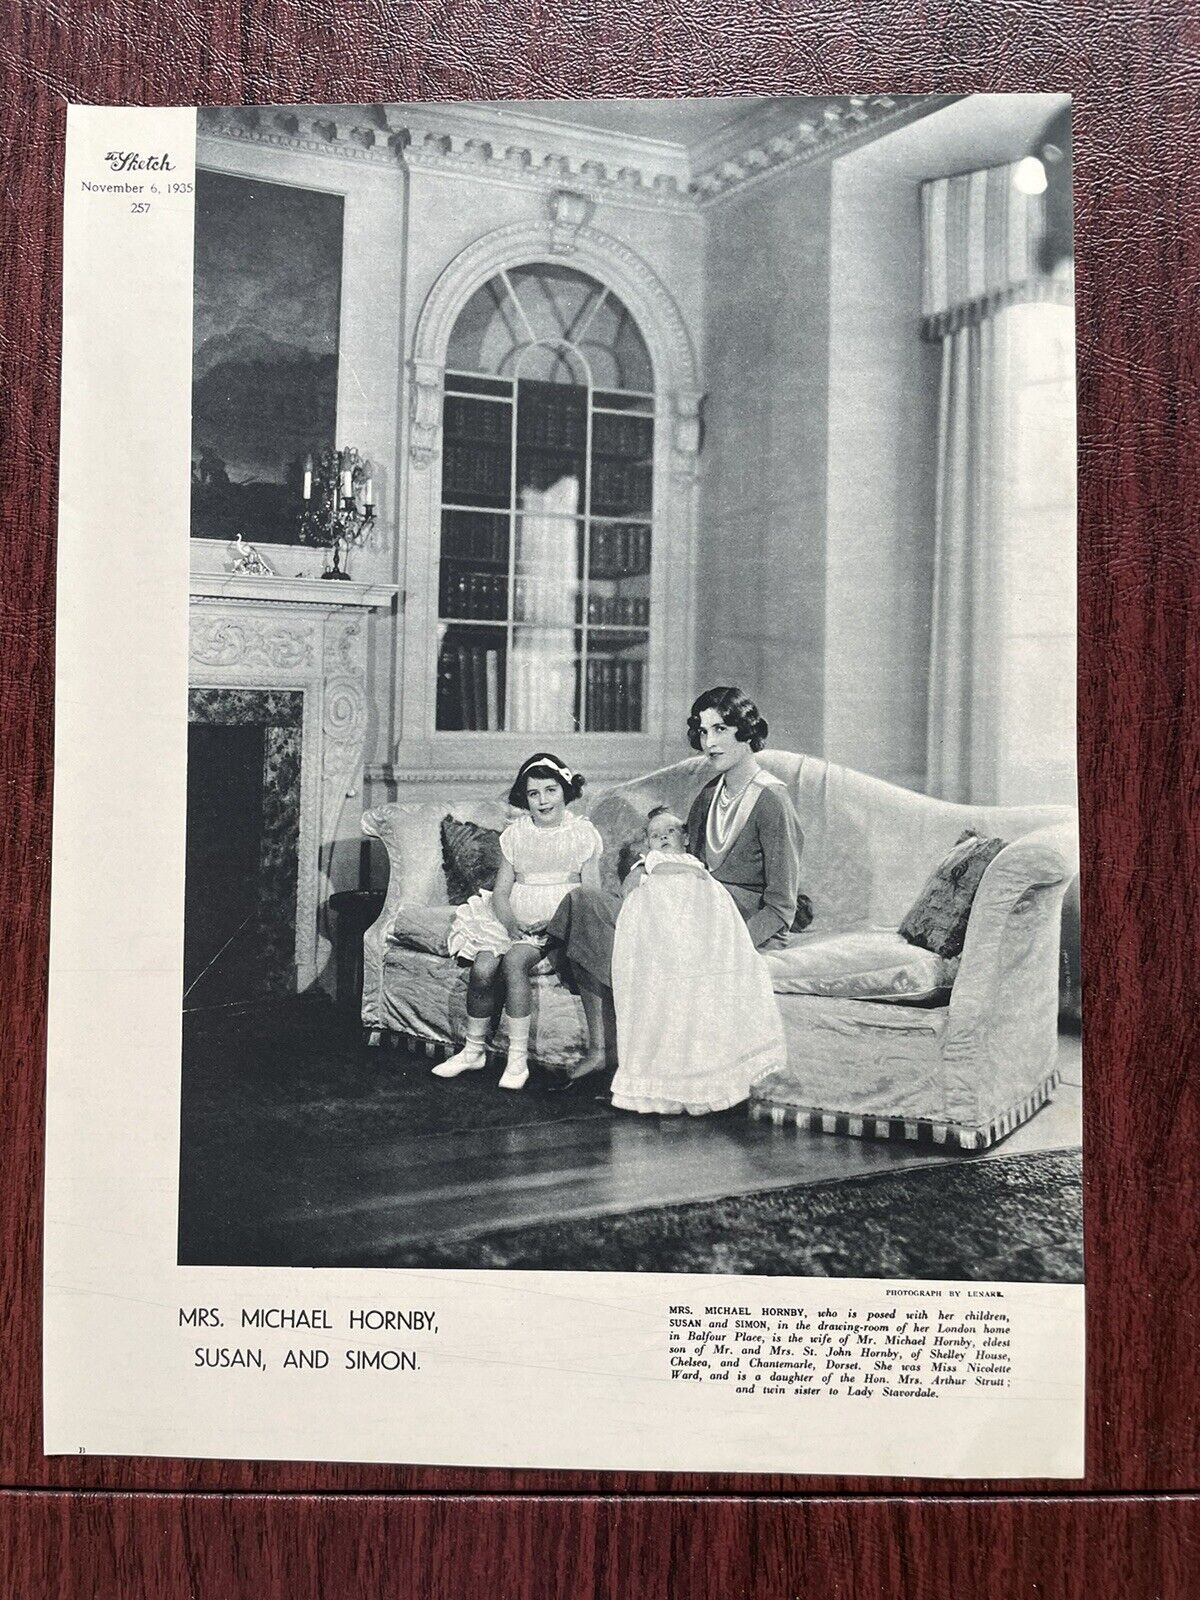 Mrs. Michael Hornby Nicolette Ward Susan Simon Lenare Photo The Sketch 1935